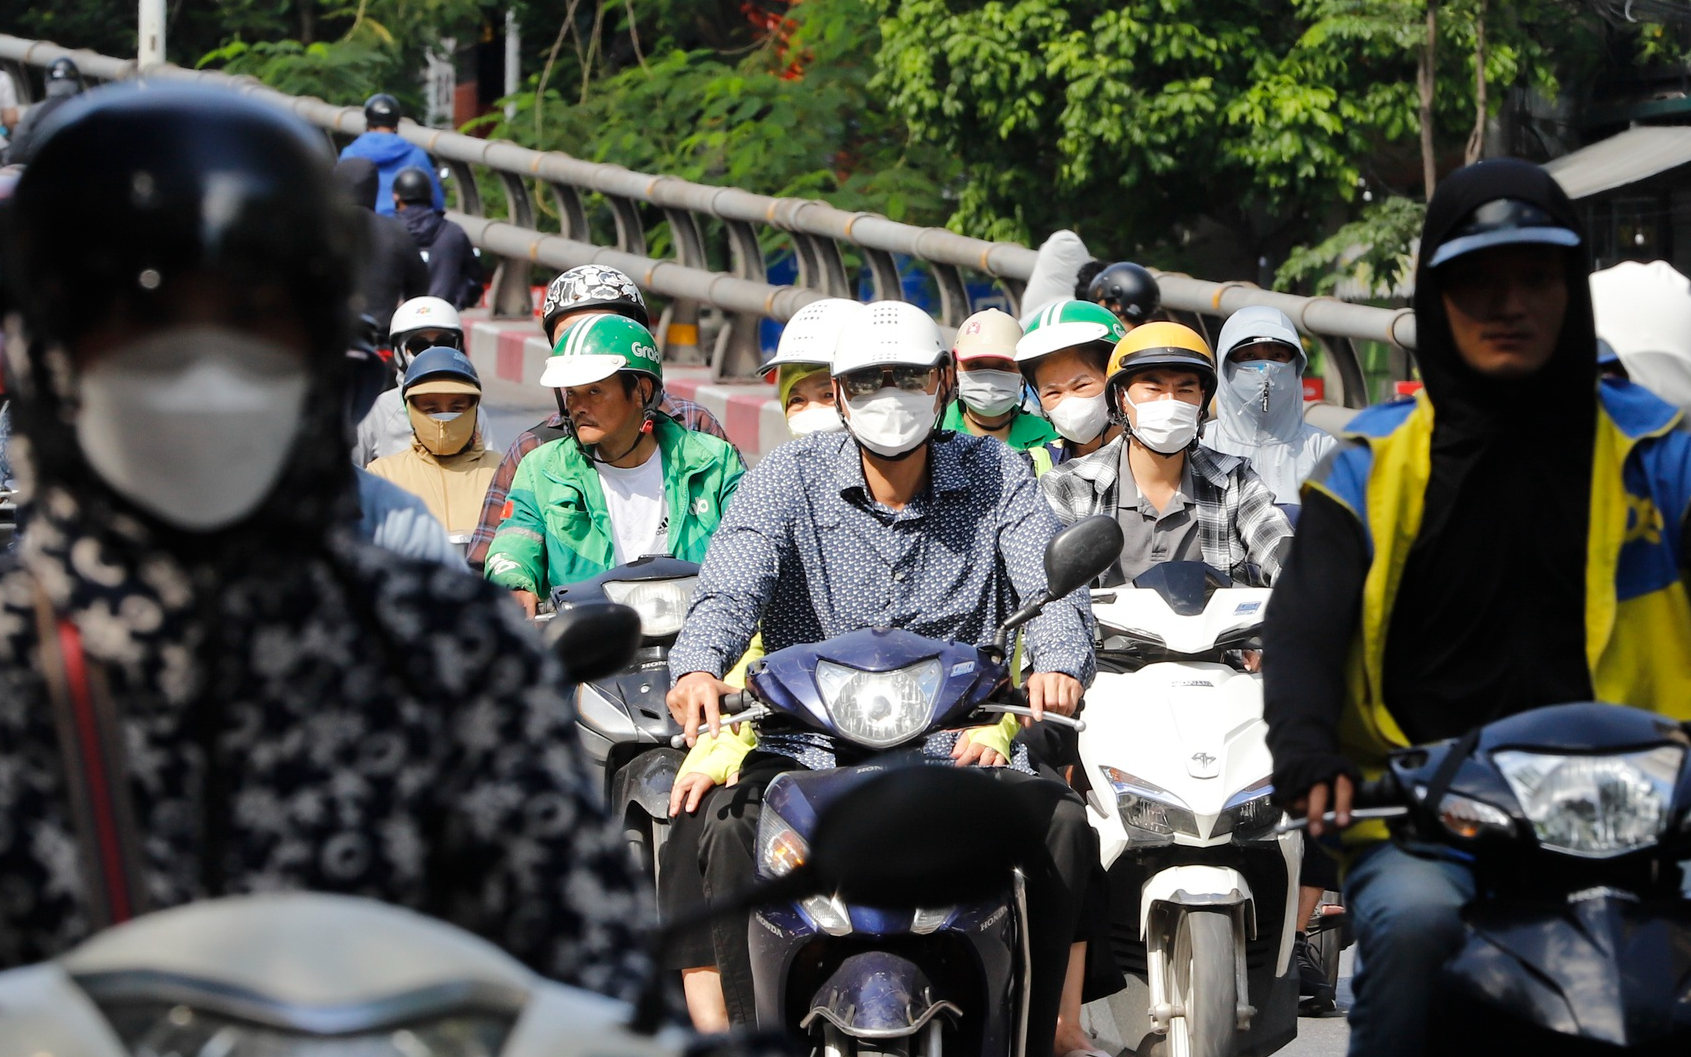 Bất chấp biển cấm, hàng đoàn xe máy vẫn nuối đuôi nhau vượt cầu trong giờ cao điểm tại Hà Nội